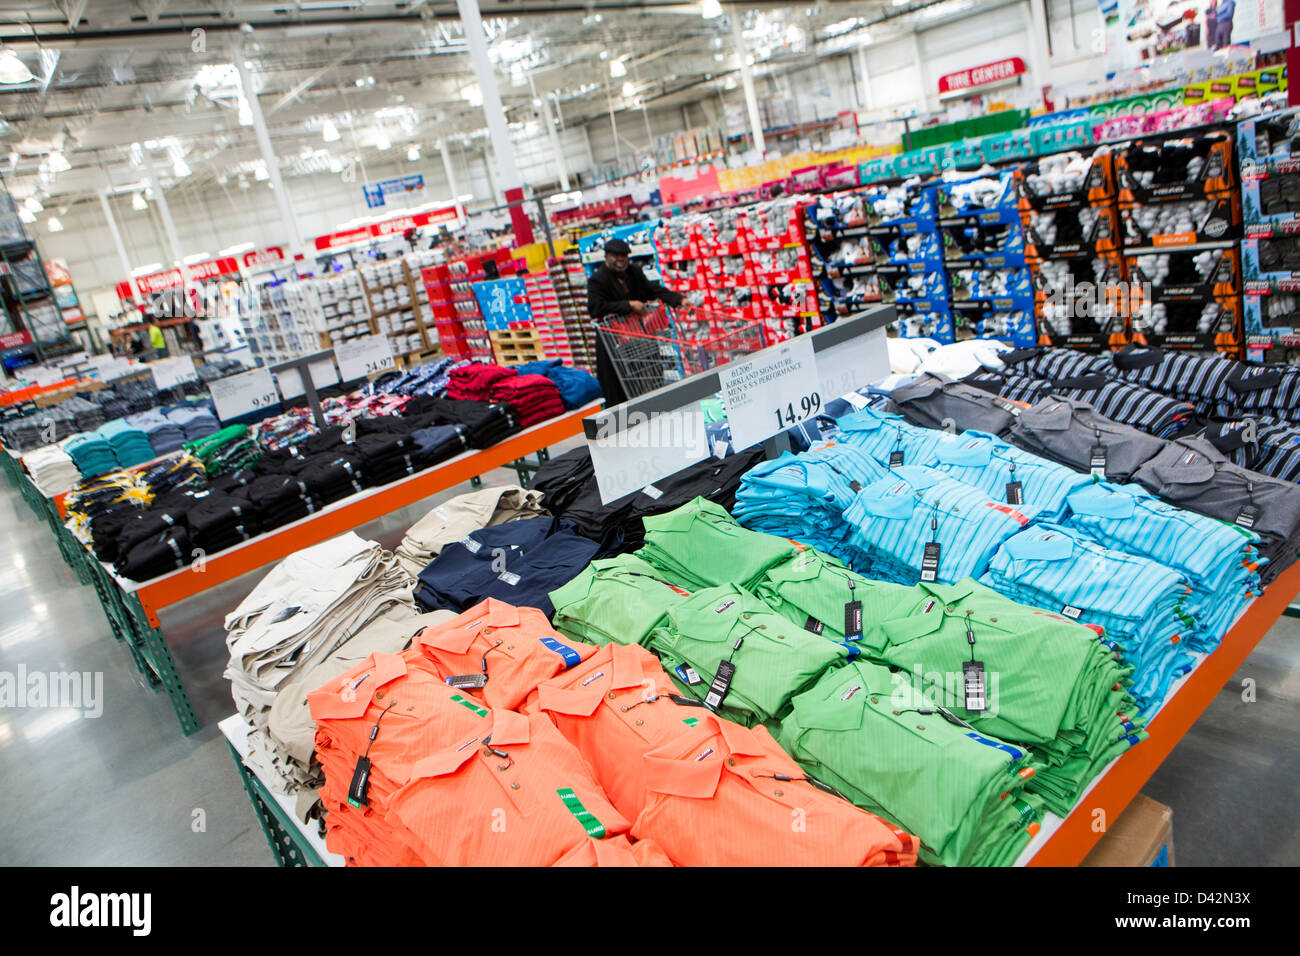 Les clients shopping dans la section de vêtements d'un entrepôt Costco  Wholesale Club Photo Stock - Alamy